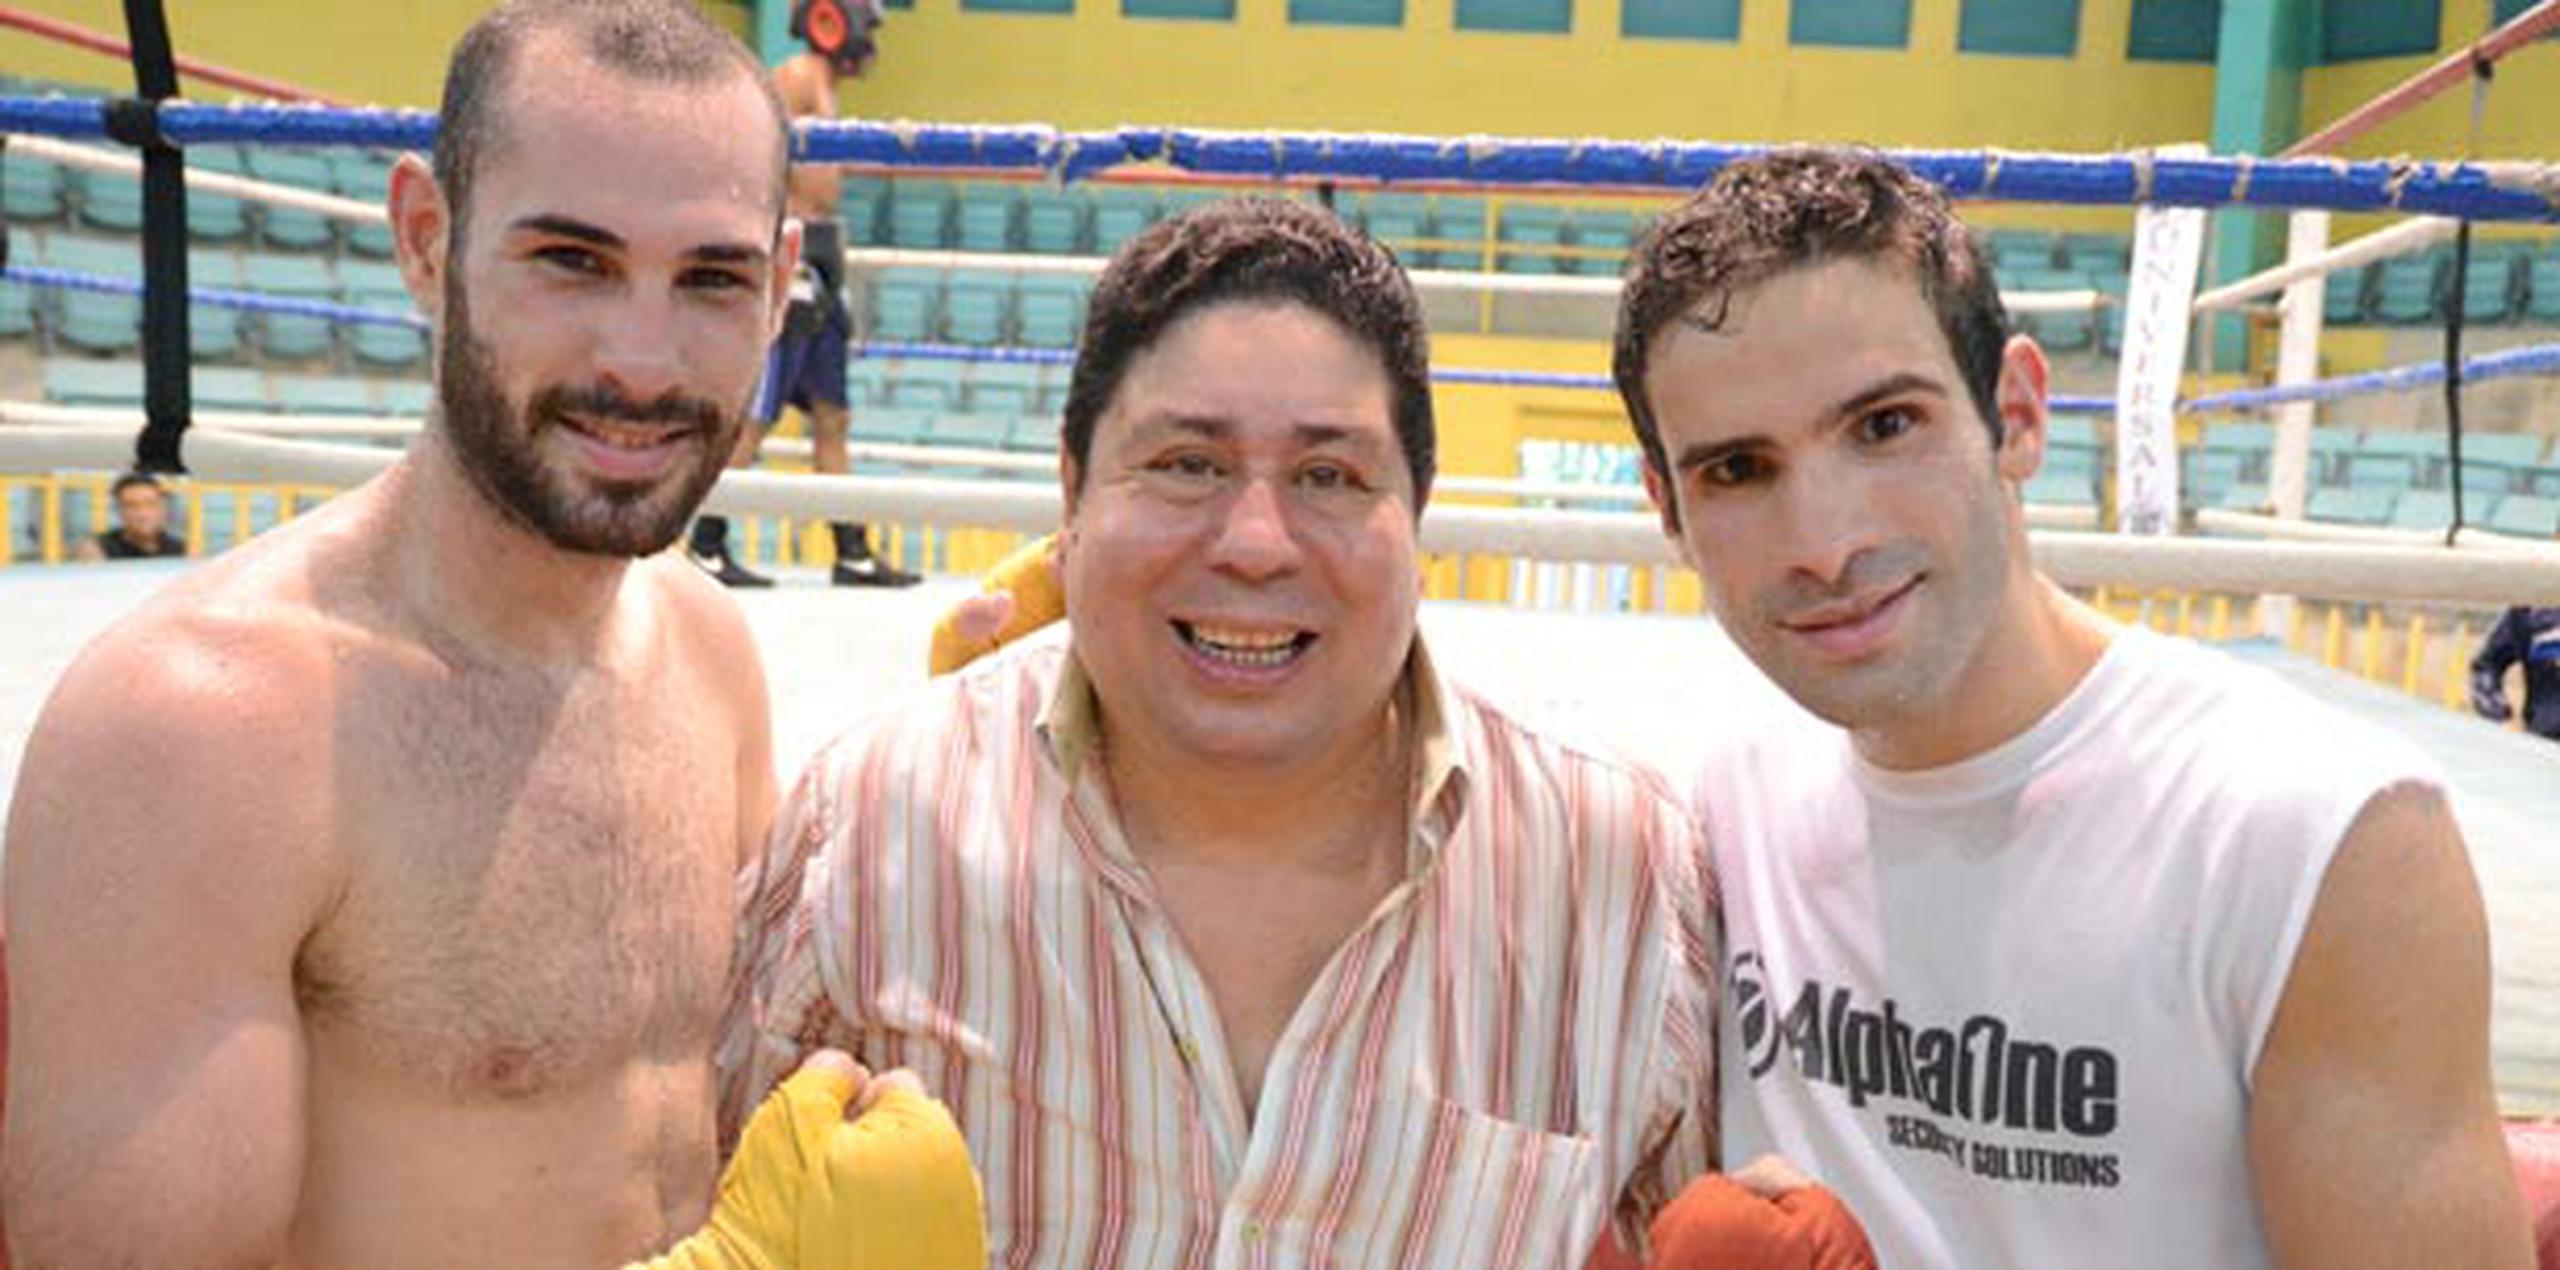 La sesión fue observada por el legendario múltiple campeón mundial Wilfredo Gómez (en el centro). (Suministrada)